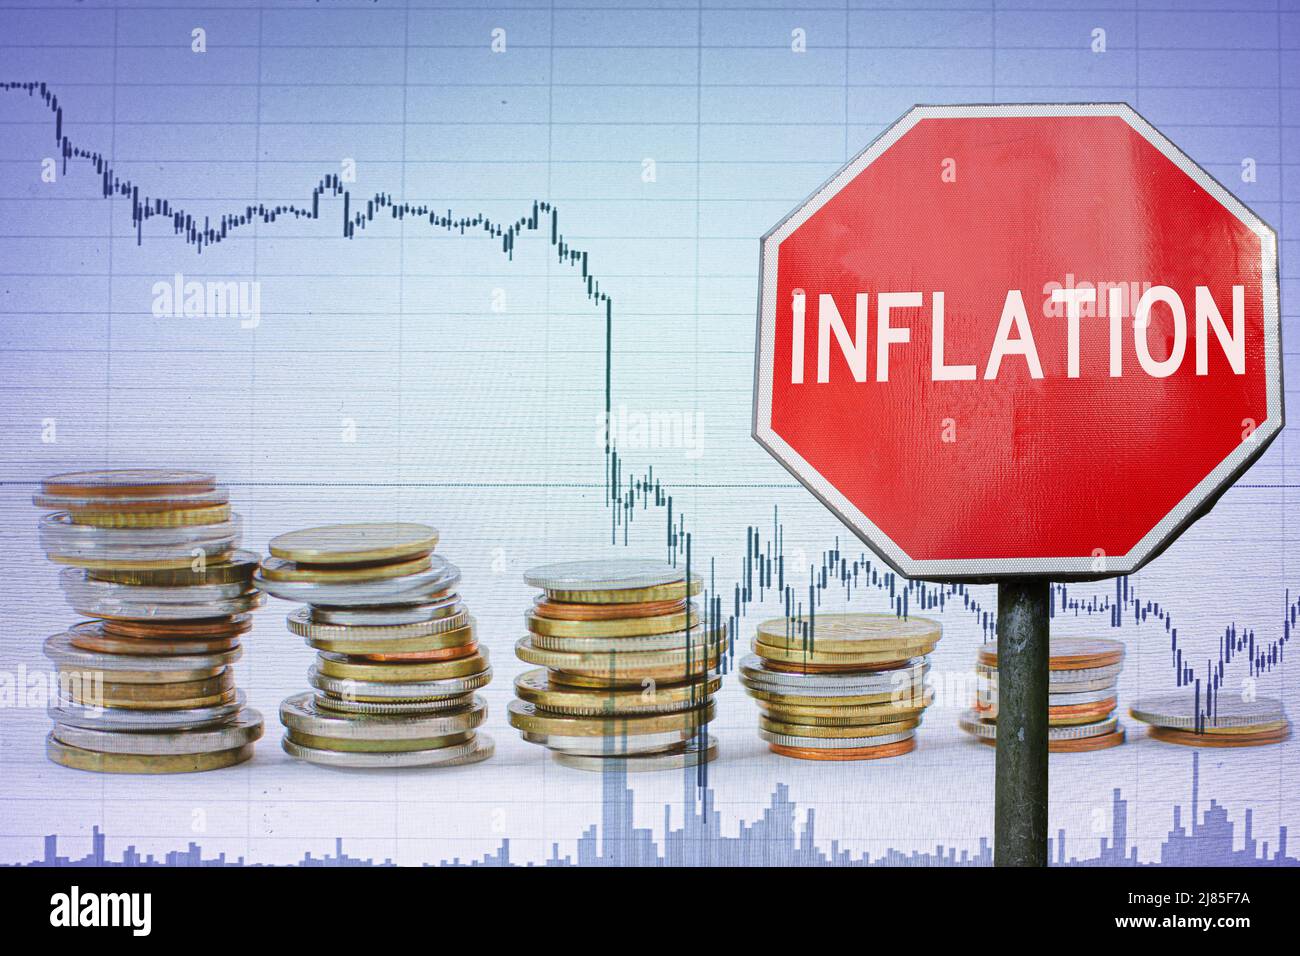 Inflationszeichen im Hintergrund der Wirtschaft - Grafik und Münzen. Stockfoto